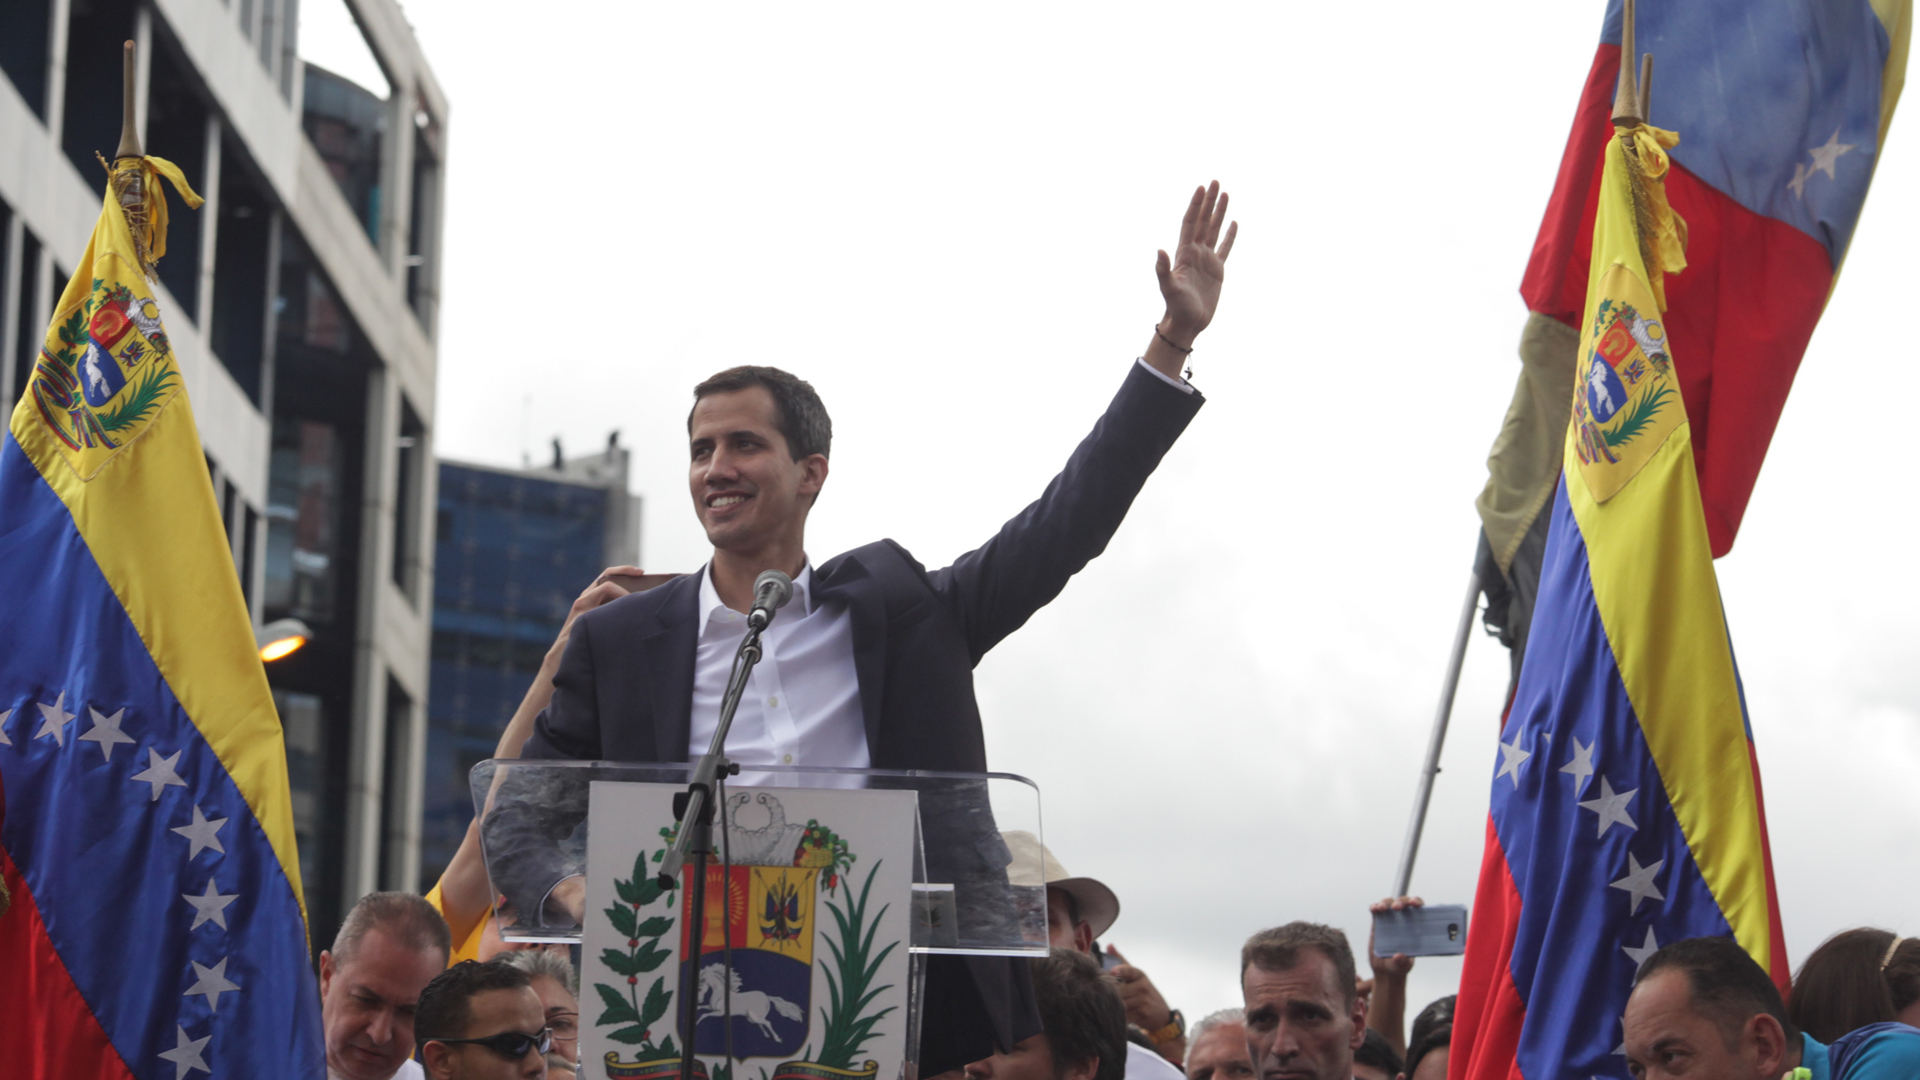 Parlamentschef Juan Guaidó, der sich selbst zum Präsidenten Venezuelas erklärte, bei einer Ansprache vor Anhängern in Caracas. | picture alliance / Xinhua News A